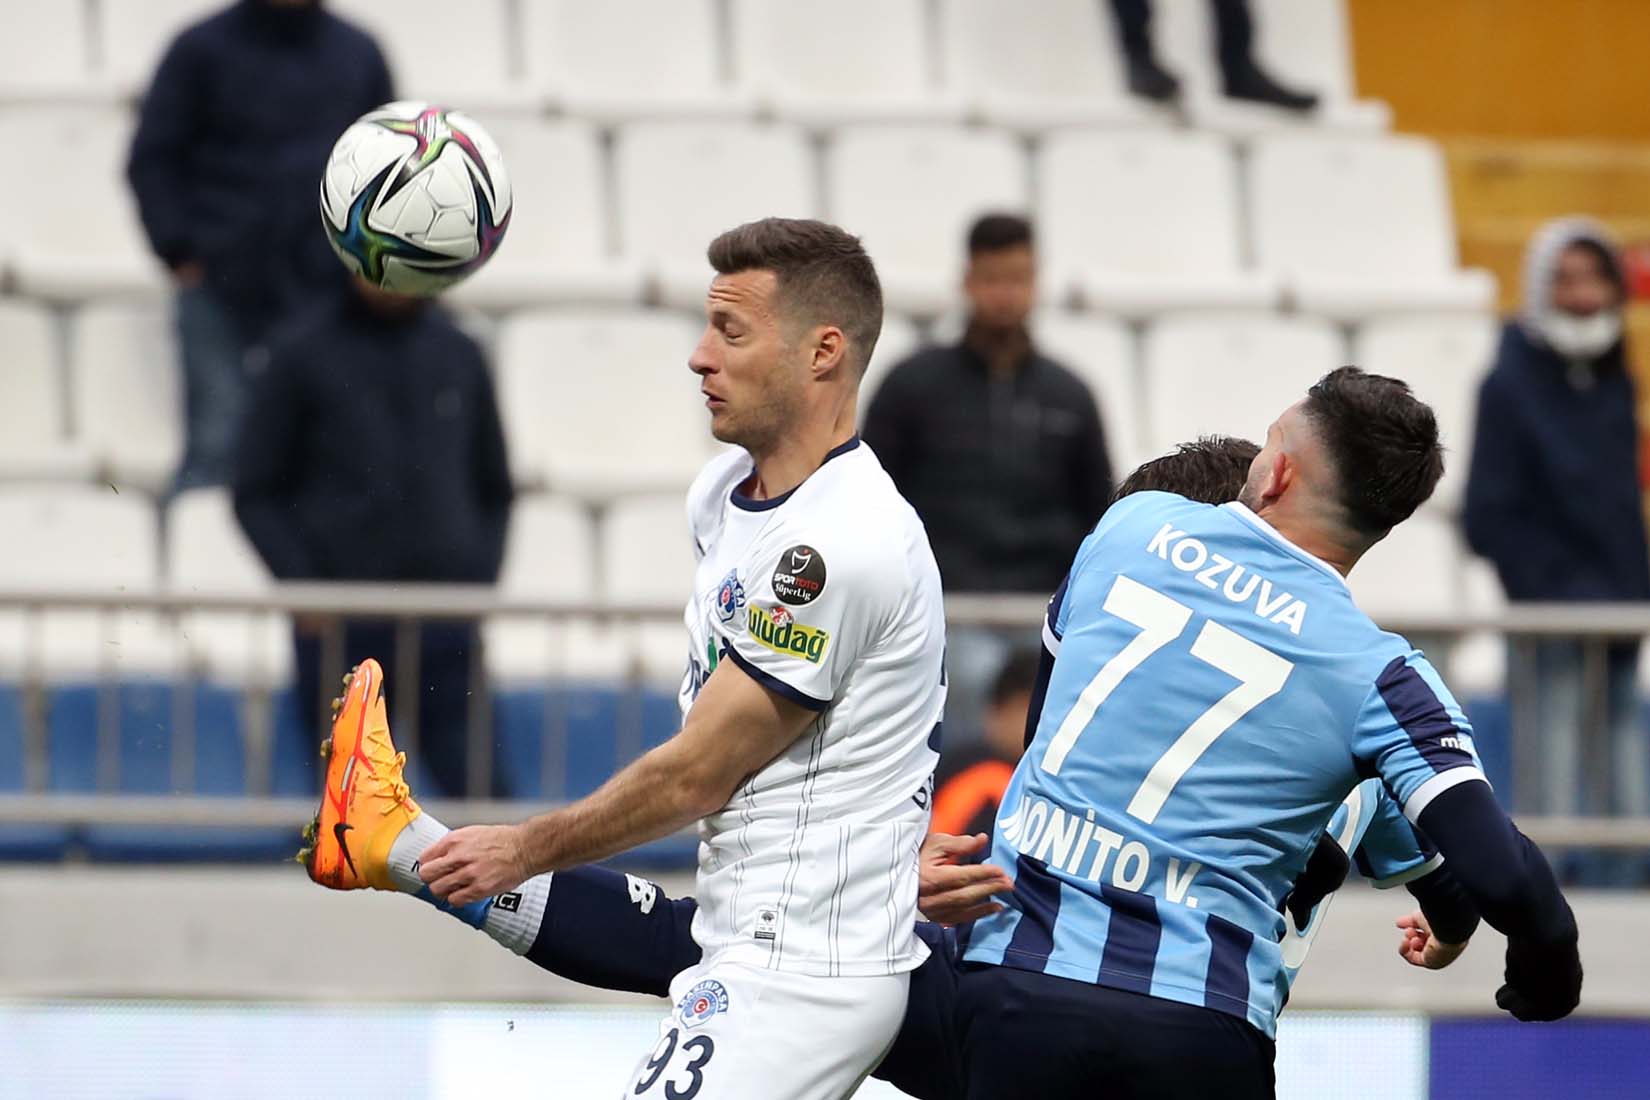 Kasımpaşa 4 - 0 Adana Demirspor maç sonucu, özeti